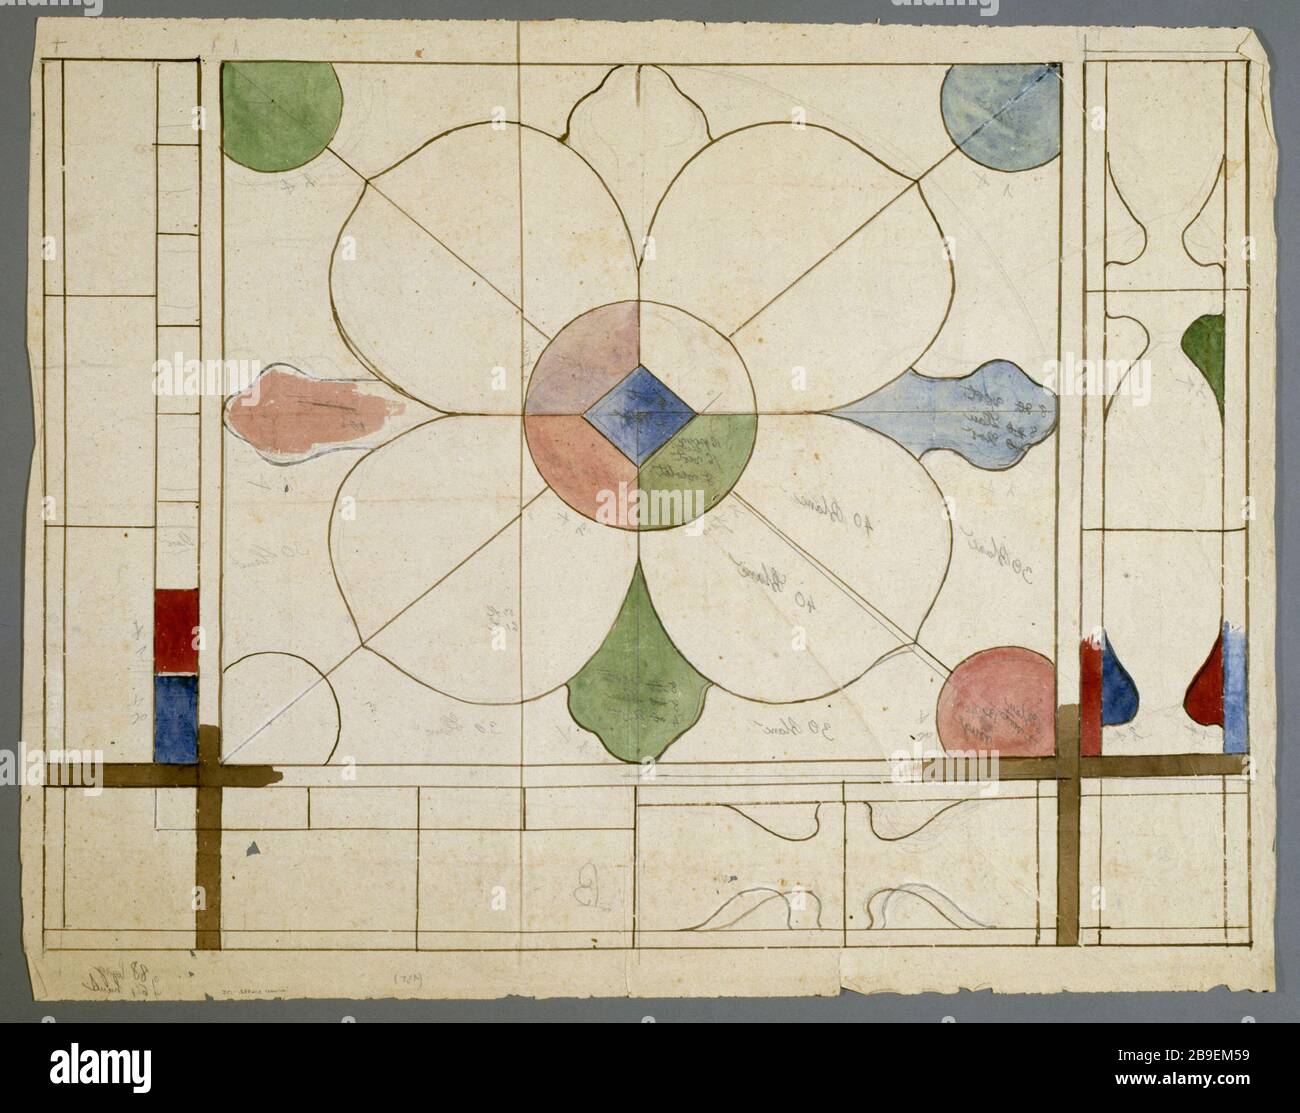 STAINED GLASS DESIGN Prosper Lafaye (1806-1883). 'Dessin de vitrail : panneau à motifs géométriques, entre 1845 et 1875'. Paris, musée Carnavalet. Stock Photo